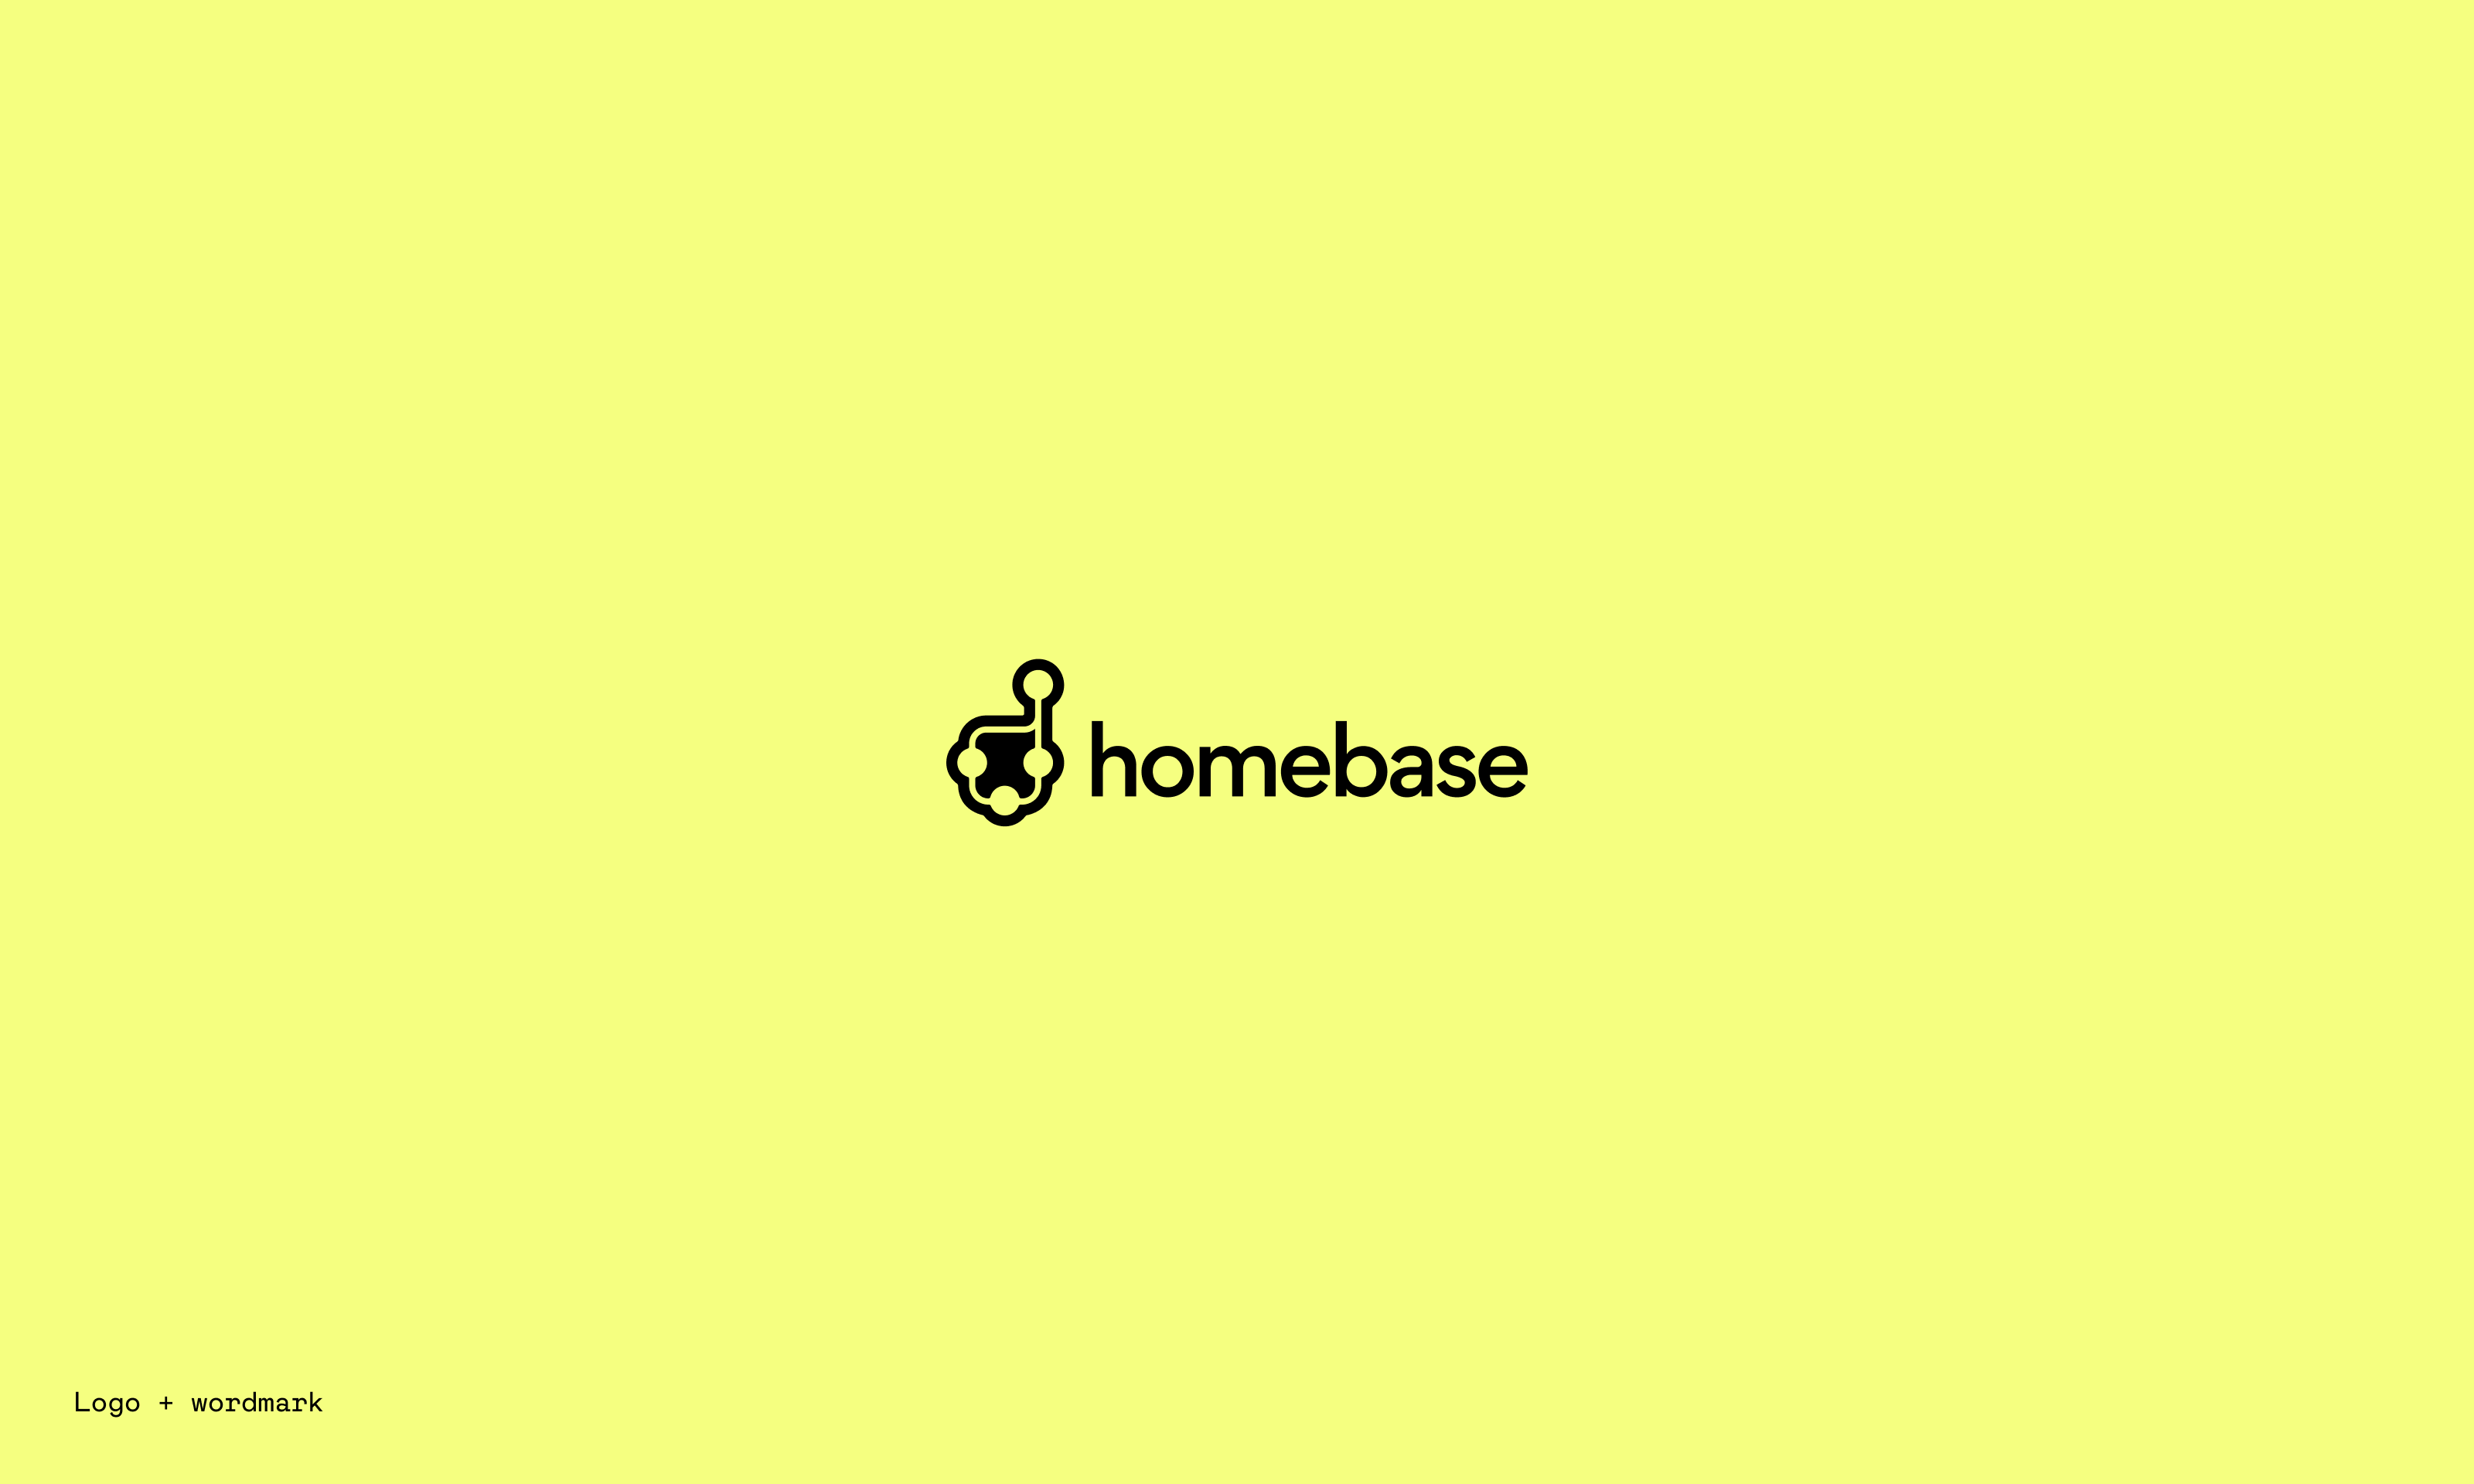 homebase-slide-17